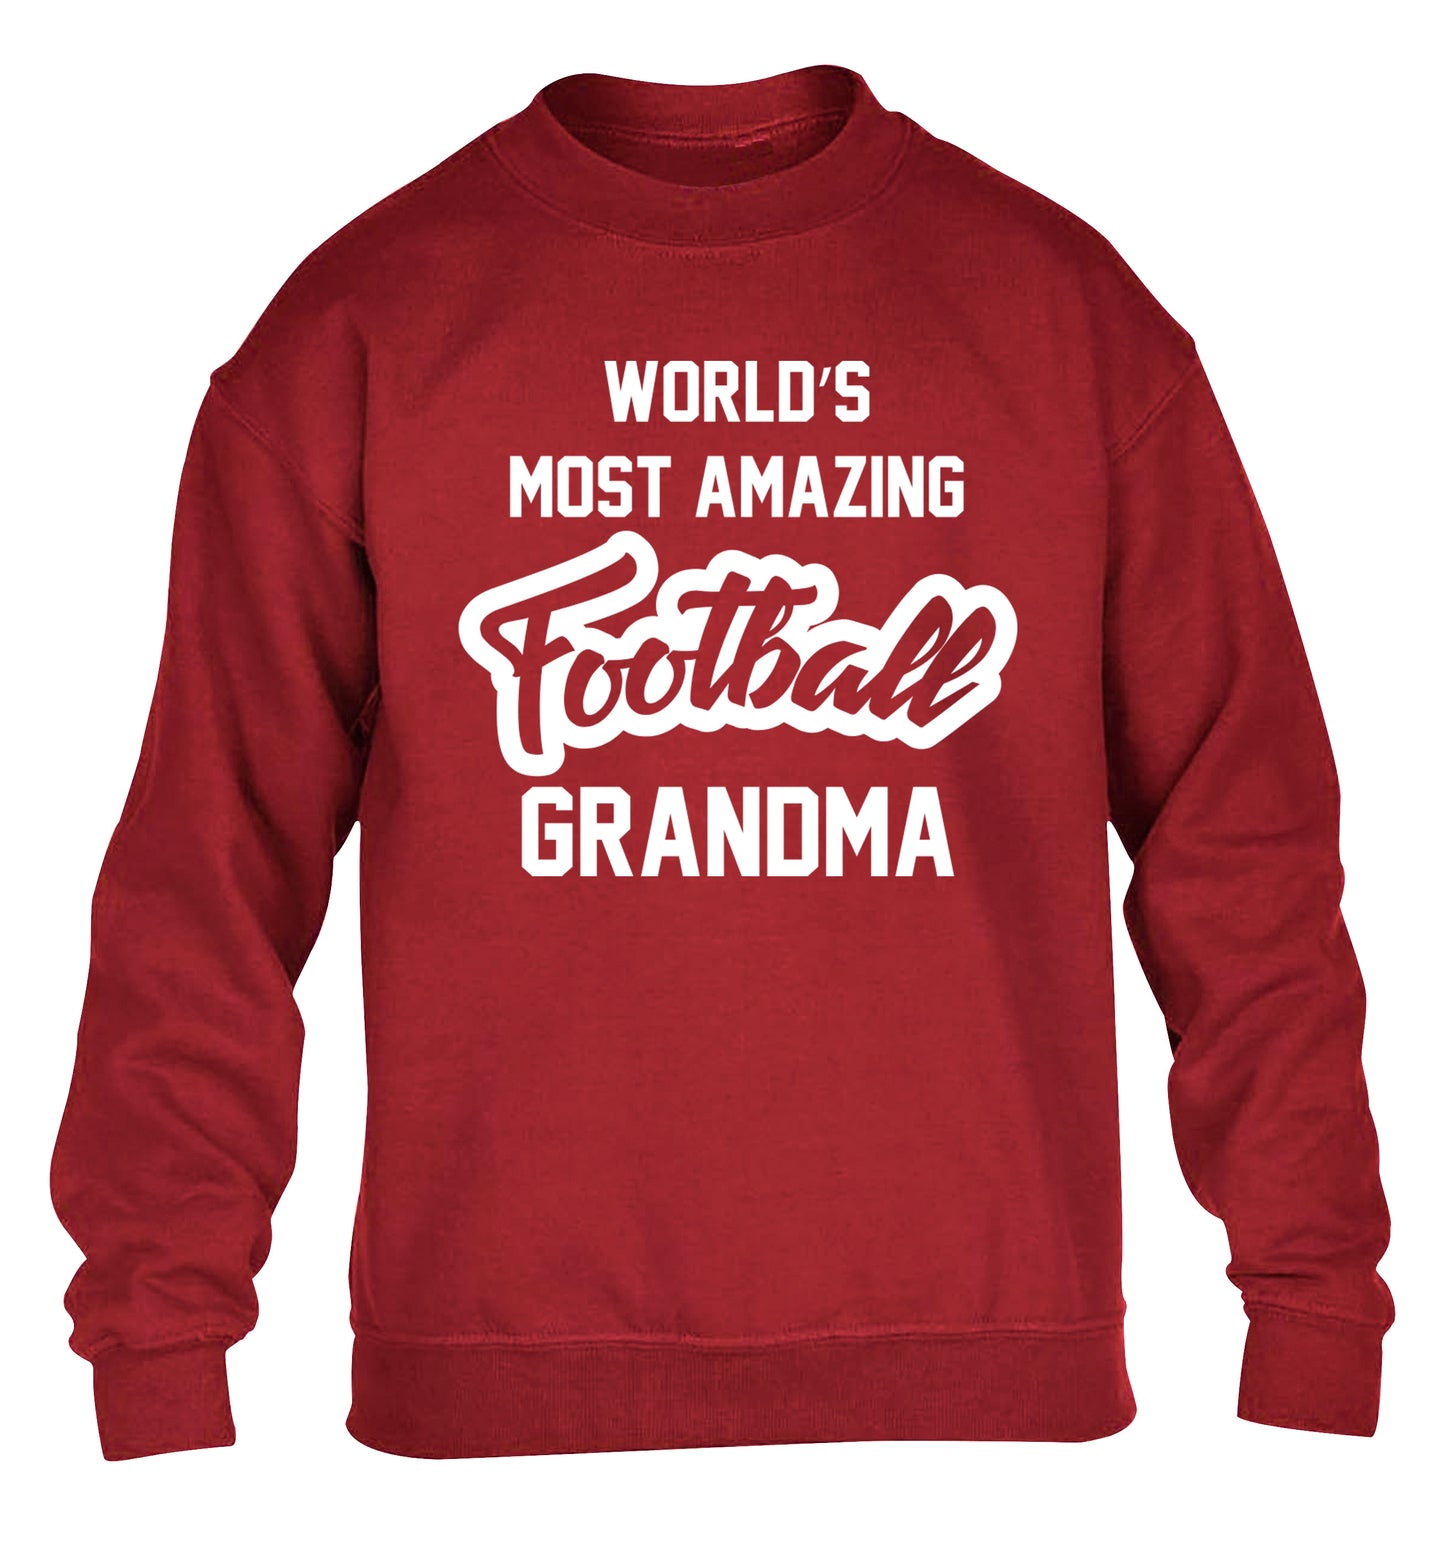 Worlds most amazing football grandma children's grey sweater 12-14 Years